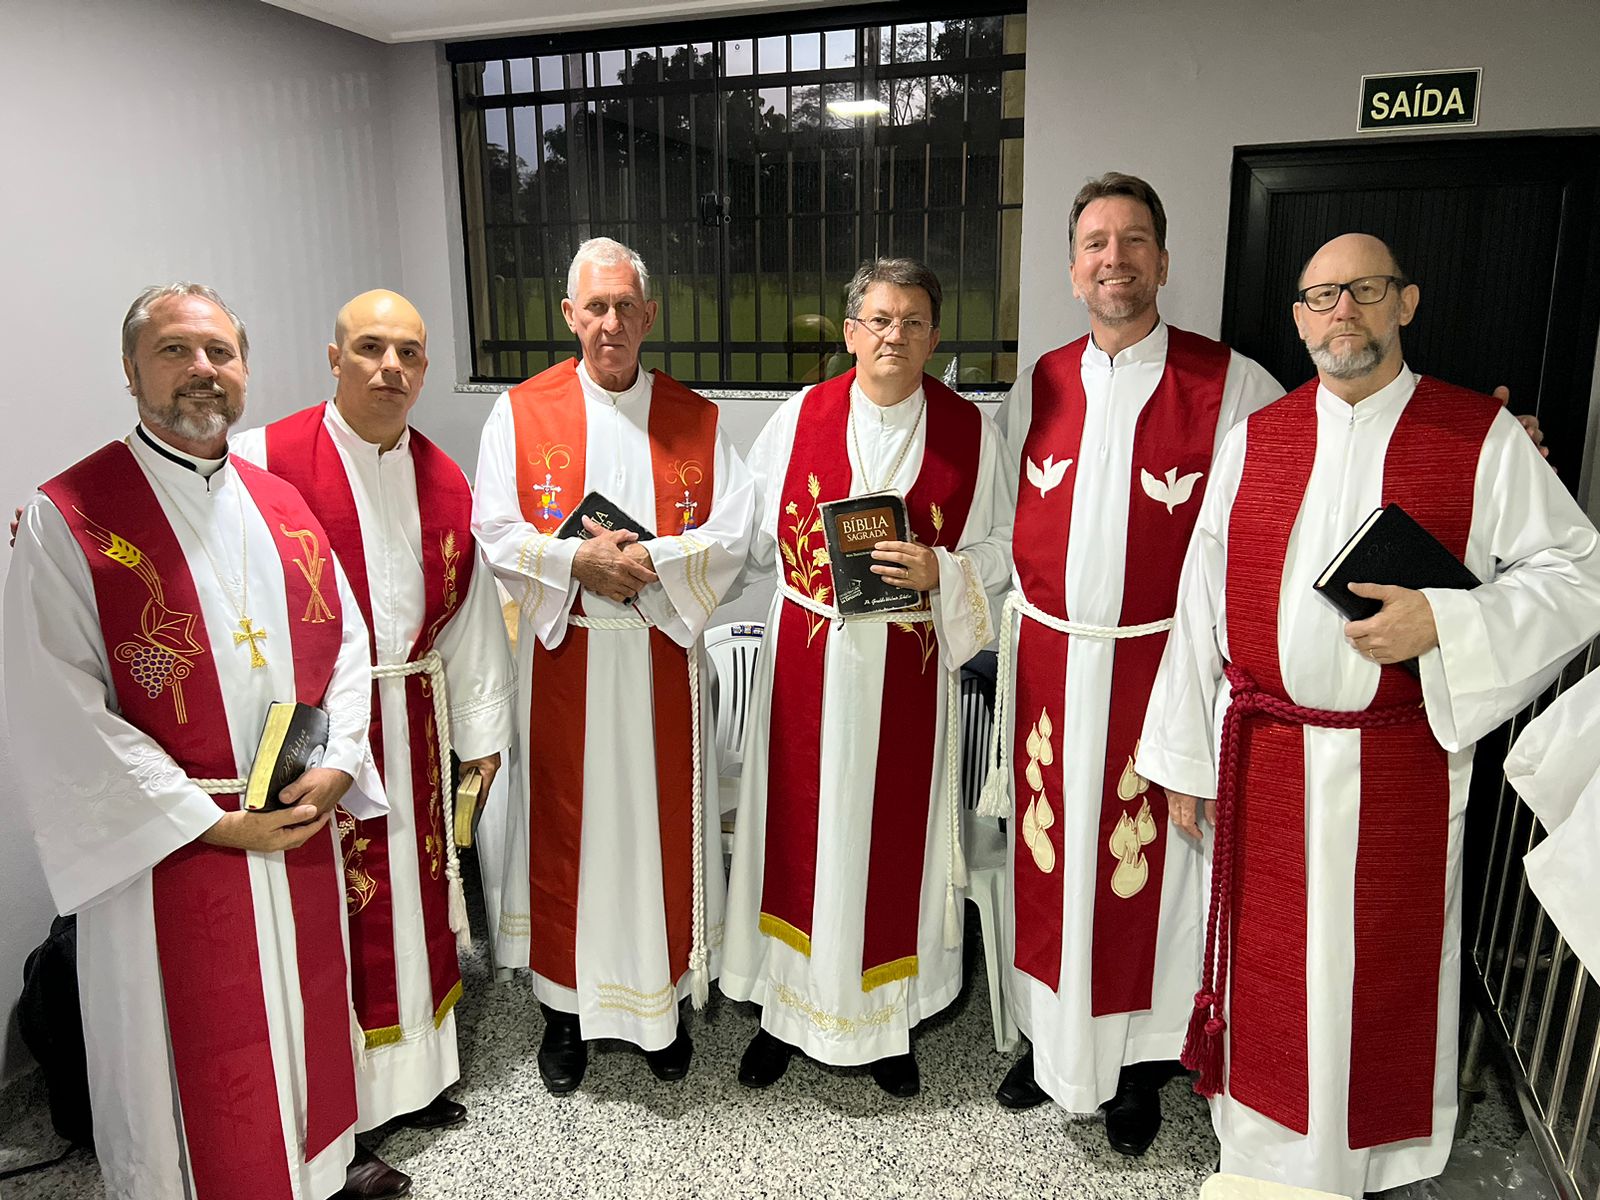 Na ordem da esquerda para direita: Rev. Fábio Werneck; Rev. Heitor Kester; Rev. Samuel Timm; Rev. Geraldo Schüler; Rev. Gustavo Schrock e Rev. Joênio Huwer